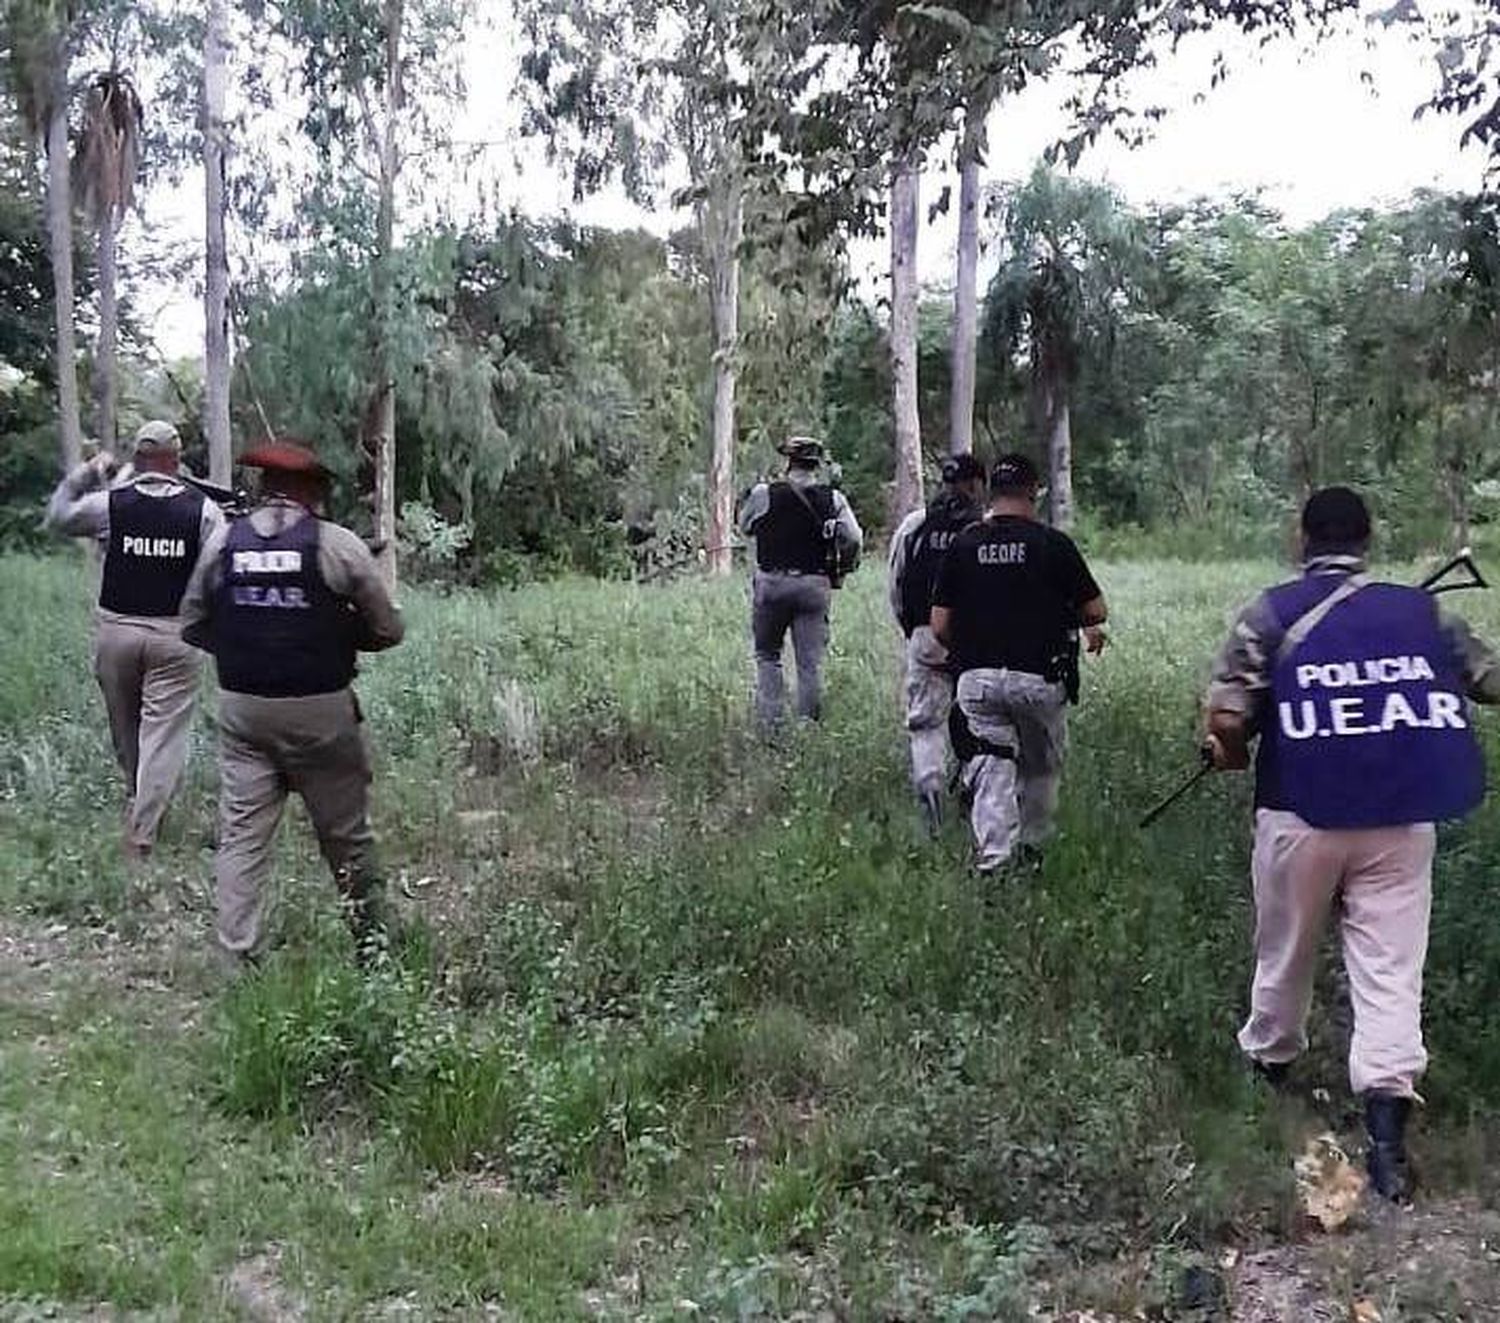 Abigeato: La UEAR y la GEOPF
intensifican patrullajes en zonas rurales